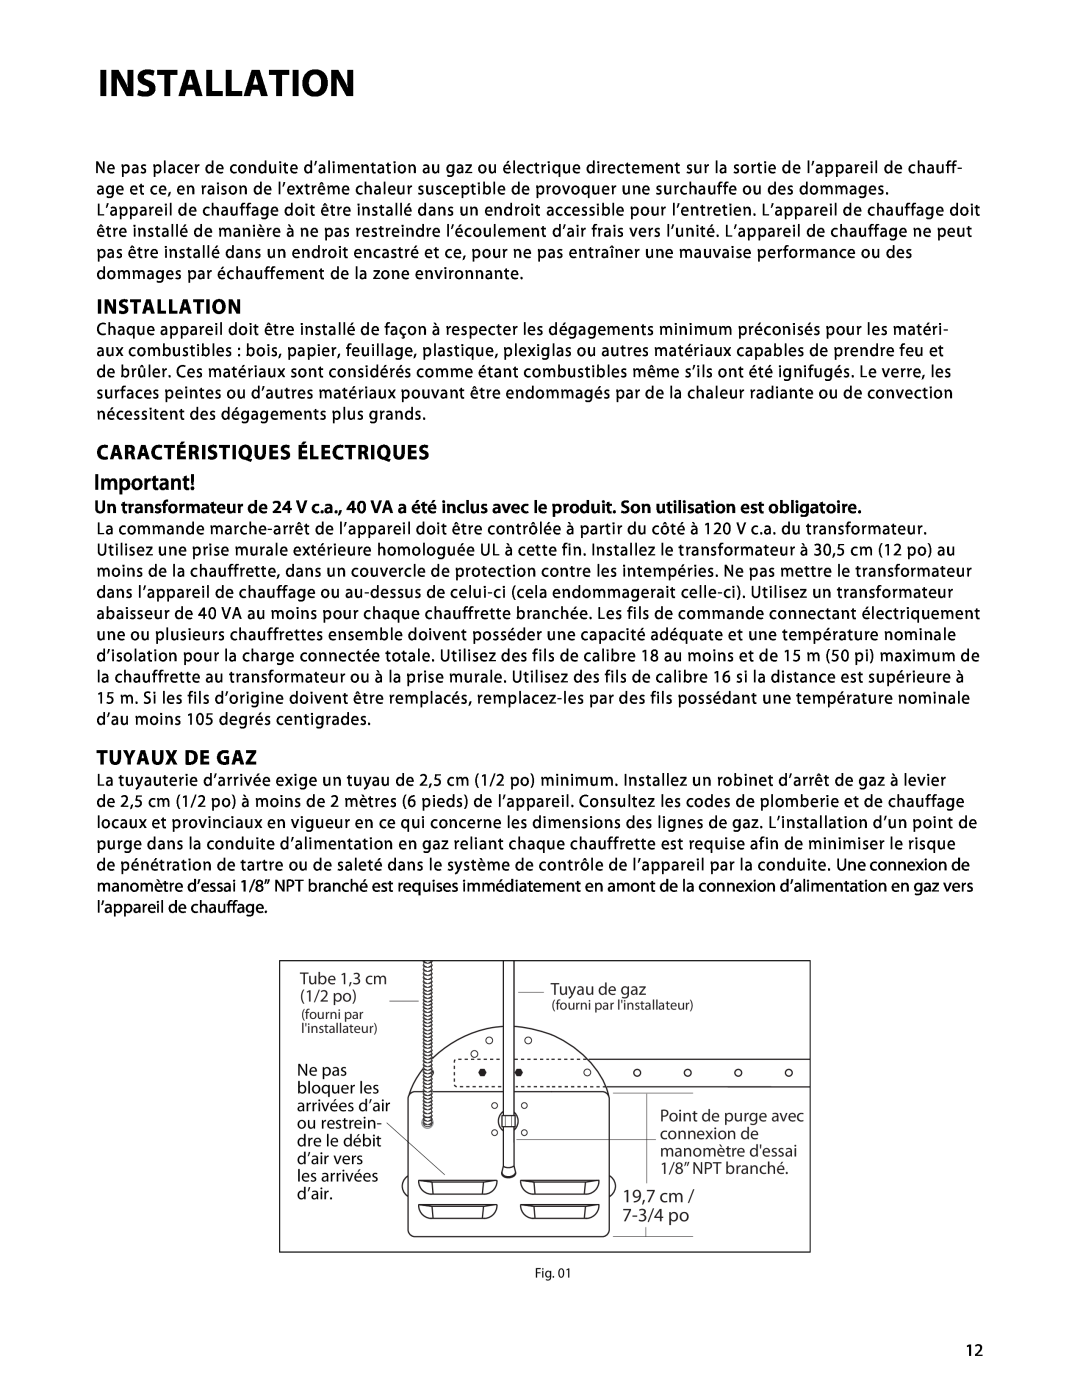 Fisher & Paykel DRH-48N manual Installation, Caractéristiques Électriques, Tuyaux De Gaz, 19,7 cm, 7-3/4po 